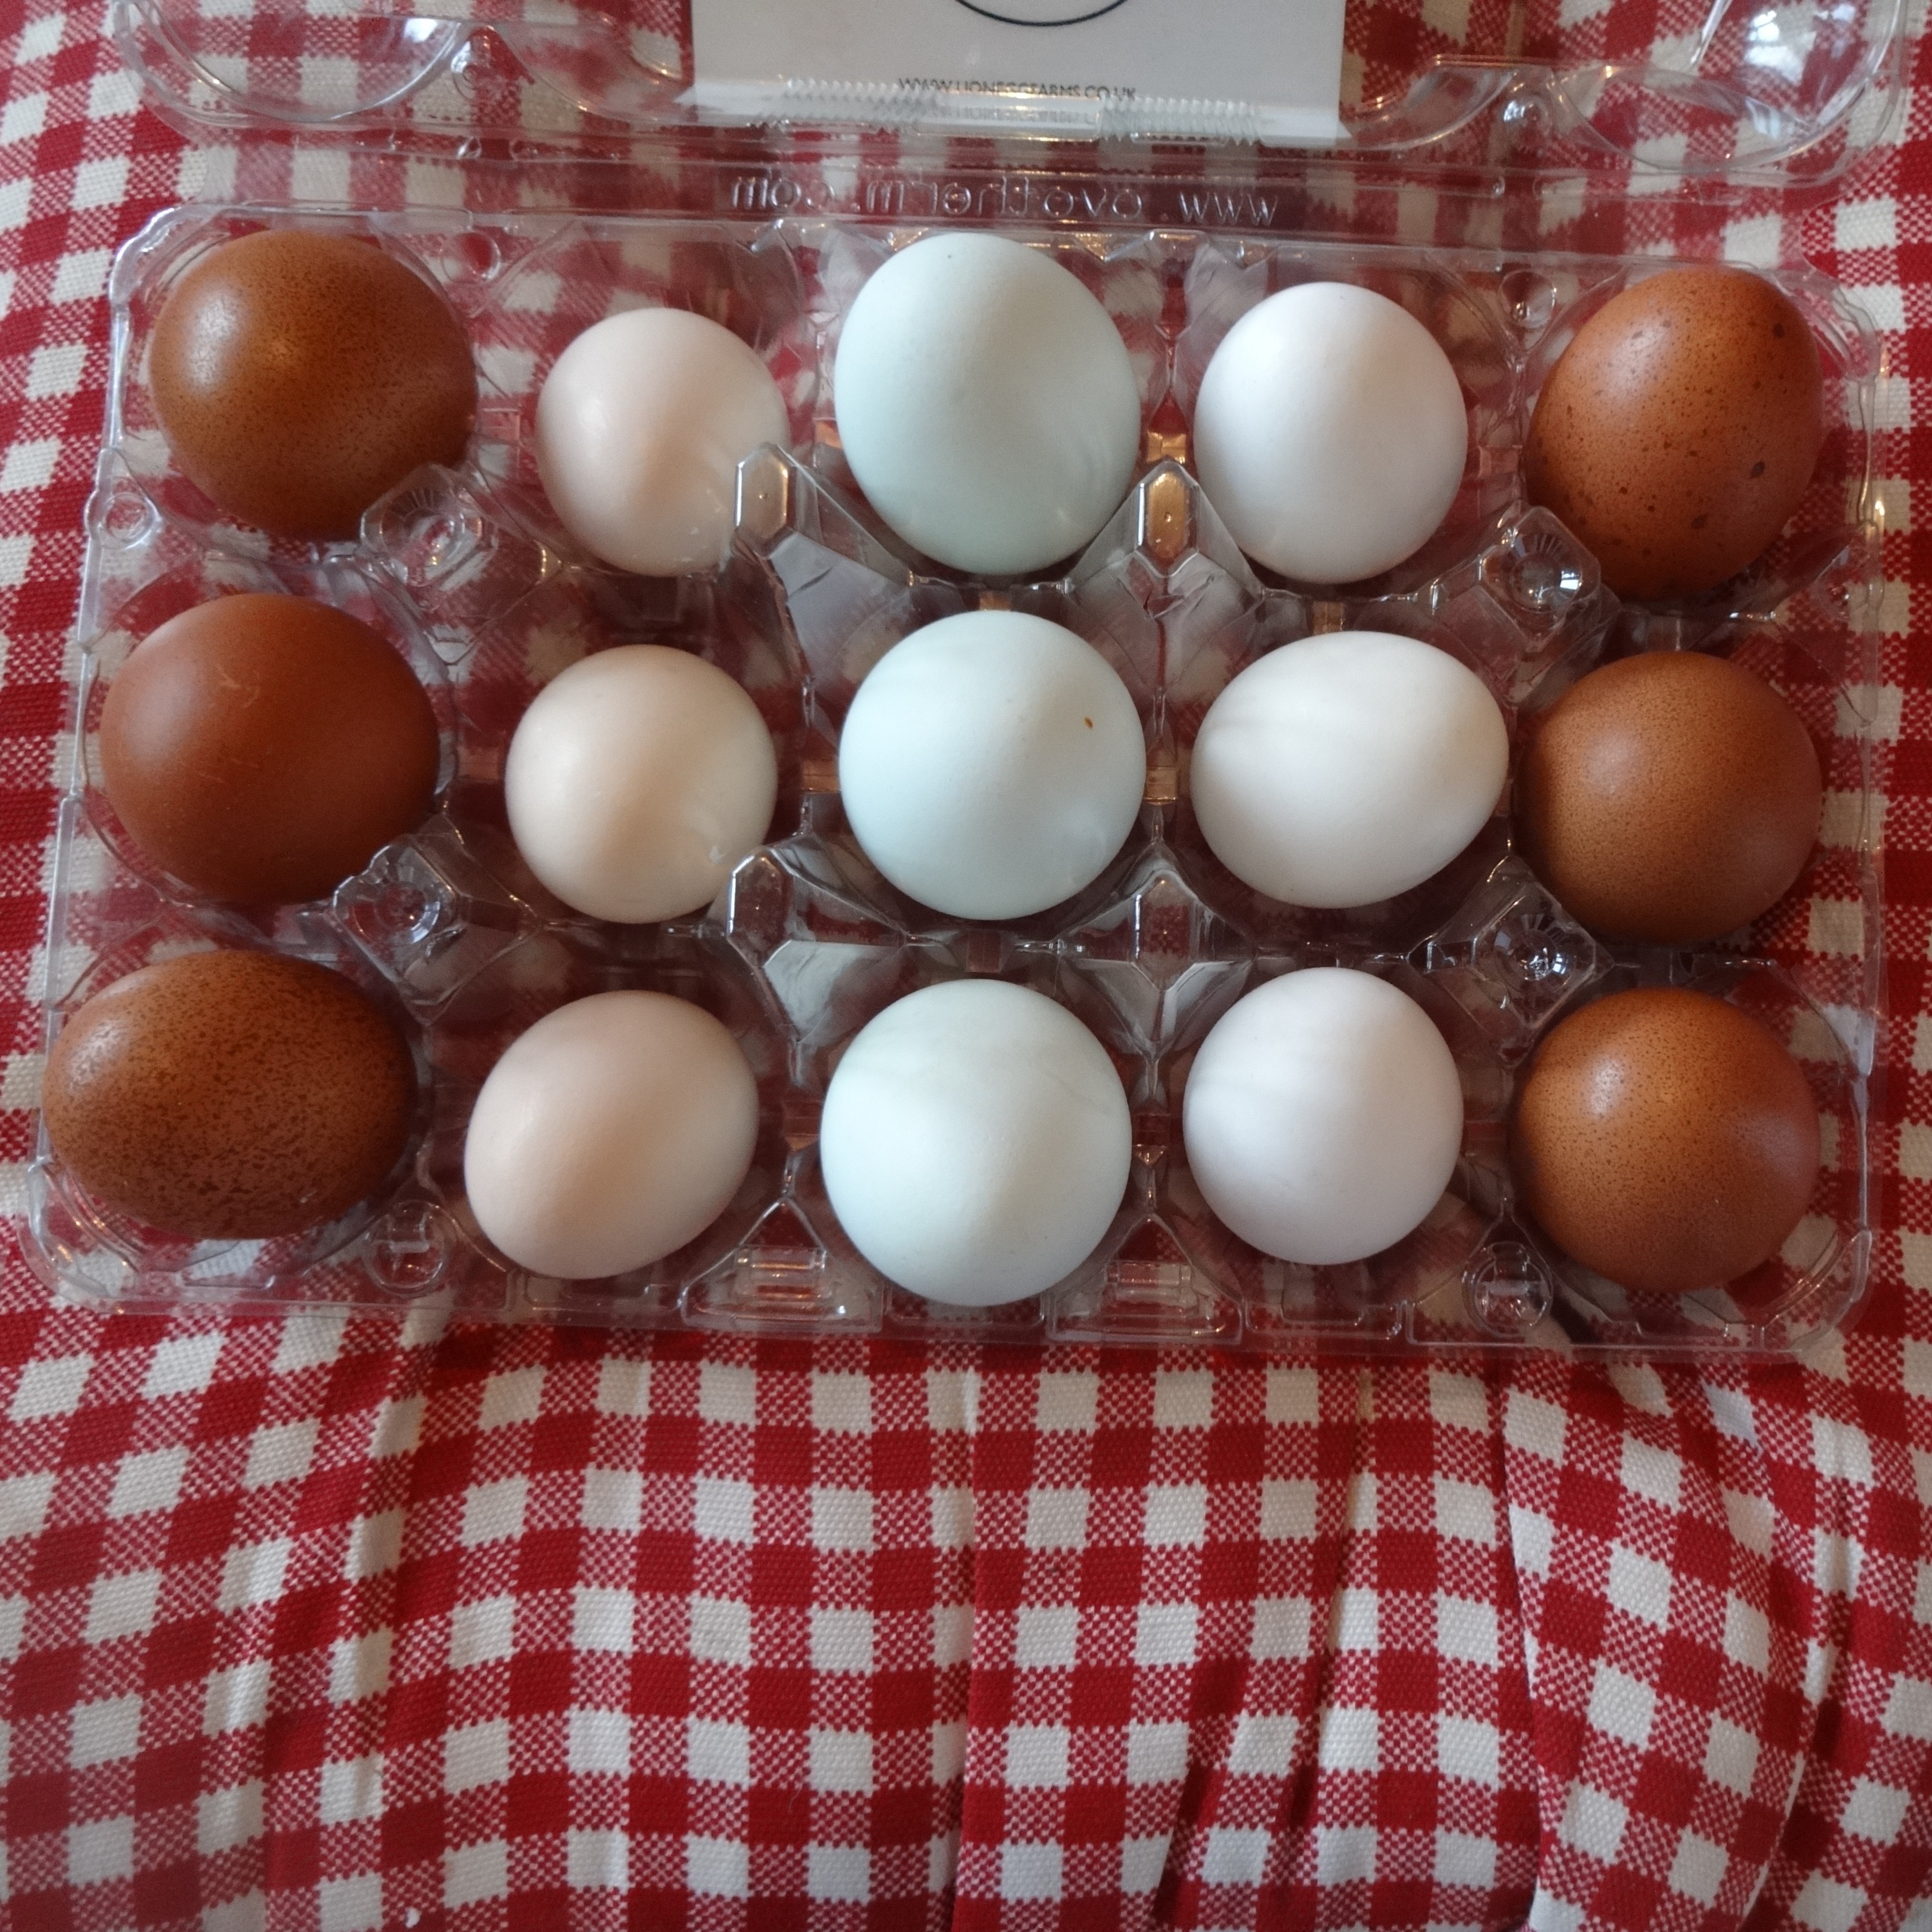 Nikkesha Heaths samling av fantastiska och olikformade ägg